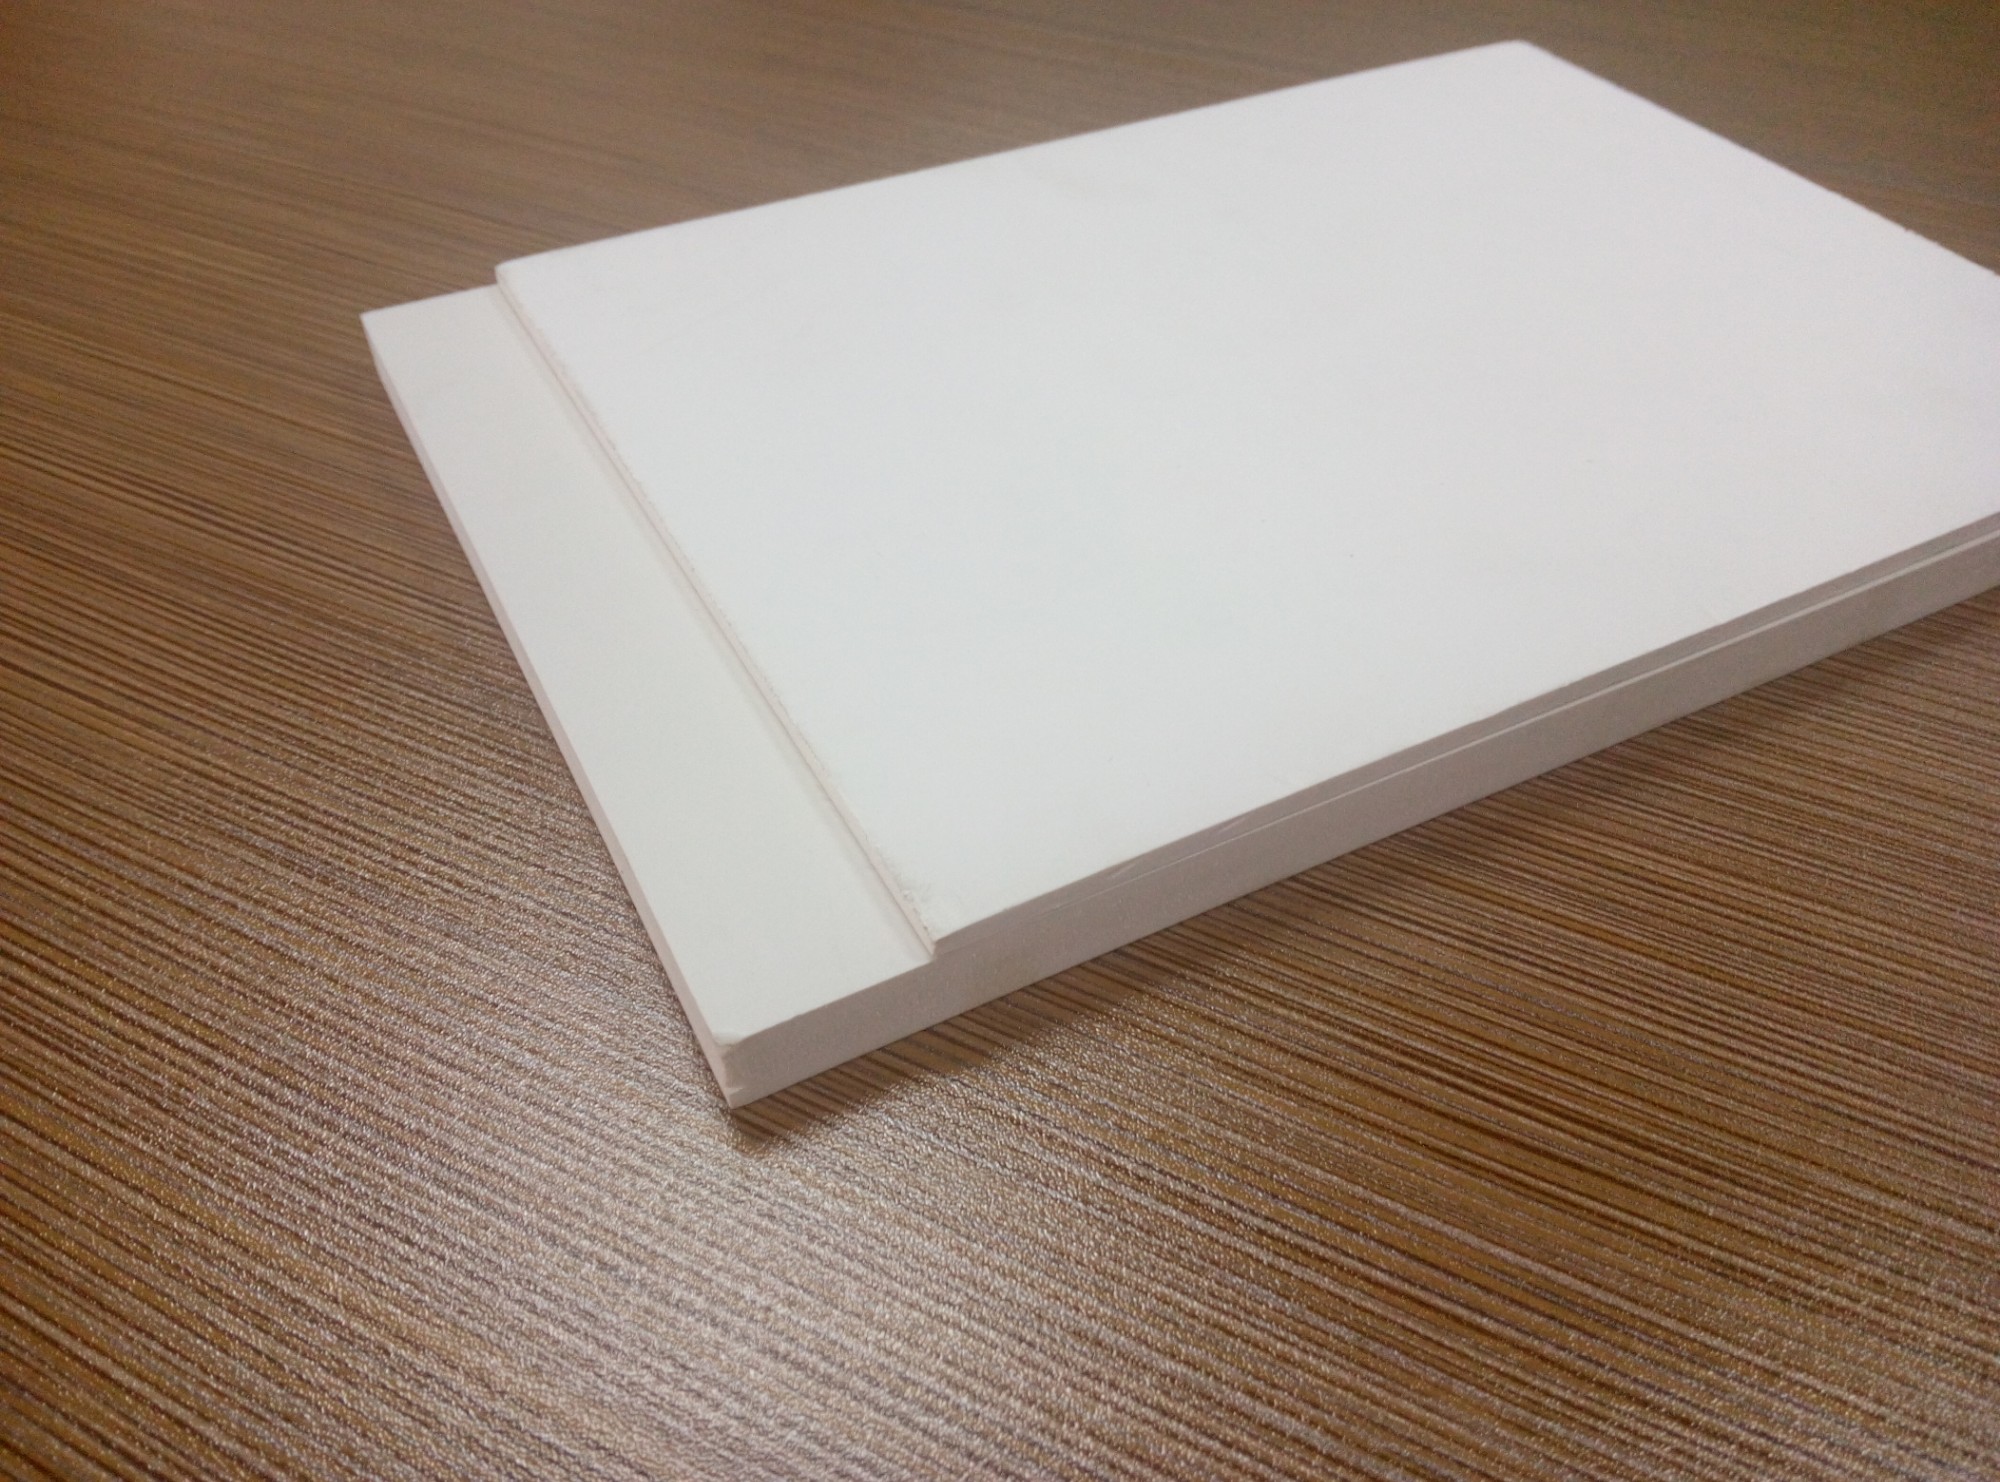 Mobilya için 10mm 15mm kalınlığında beyaz PVC köpük tahta satın al,Mobilya için 10mm 15mm kalınlığında beyaz PVC köpük tahta Fiyatlar,Mobilya için 10mm 15mm kalınlığında beyaz PVC köpük tahta Markalar,Mobilya için 10mm 15mm kalınlığında beyaz PVC köpük tahta Üretici,Mobilya için 10mm 15mm kalınlığında beyaz PVC köpük tahta Alıntılar,Mobilya için 10mm 15mm kalınlığında beyaz PVC köpük tahta Şirket,